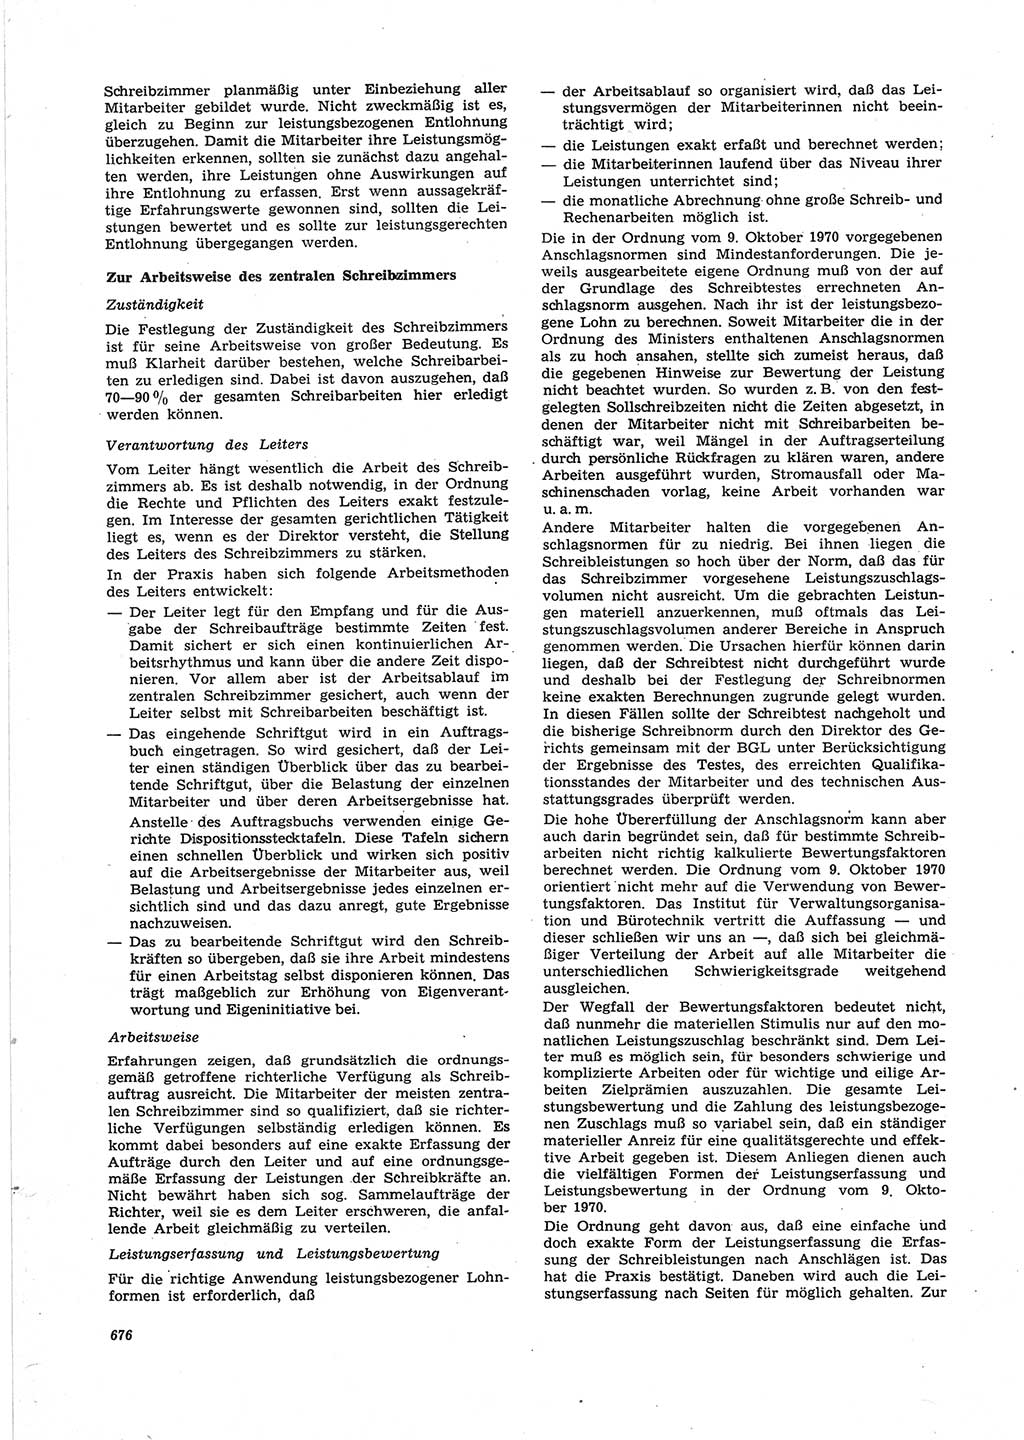 Neue Justiz (NJ), Zeitschrift für Recht und Rechtswissenschaft [Deutsche Demokratische Republik (DDR)], 25. Jahrgang 1971, Seite 676 (NJ DDR 1971, S. 676)